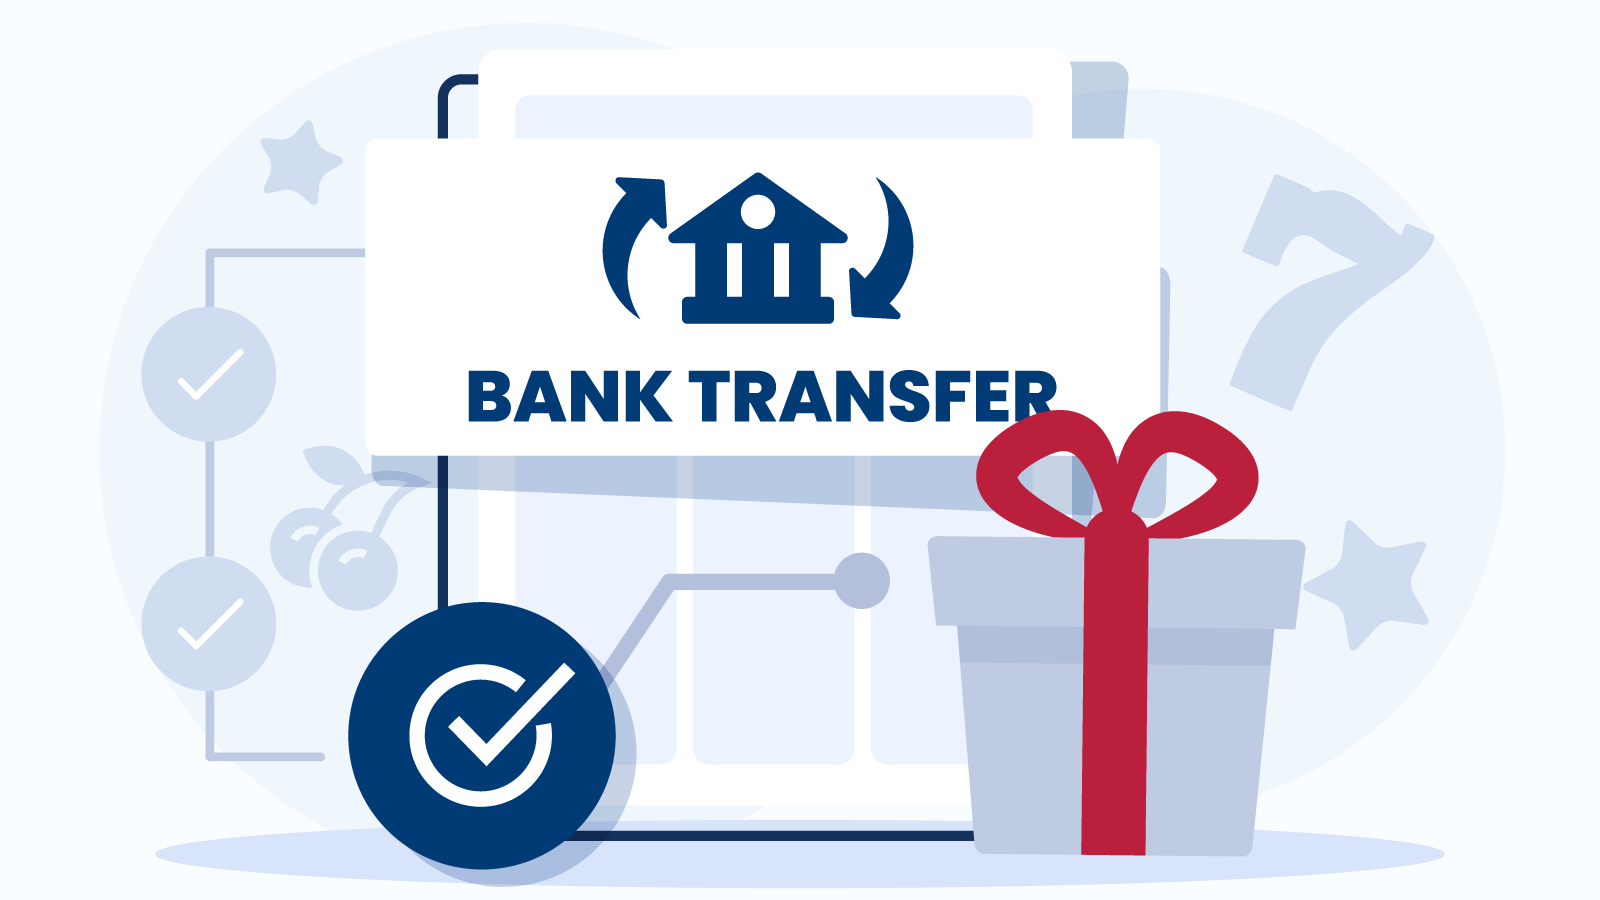 How to Claim Bank Transfer Casino Bonuses